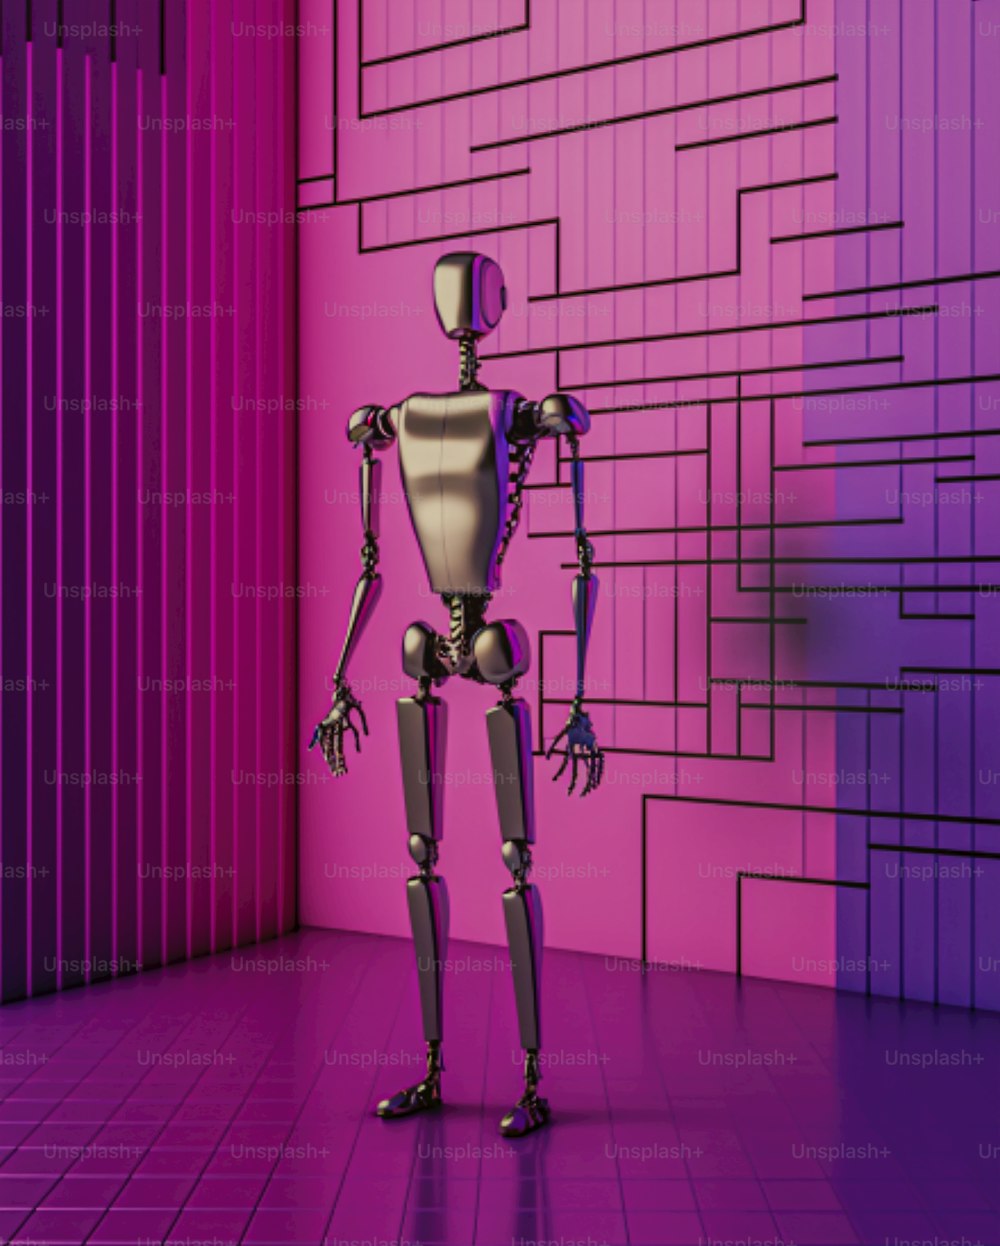 Ein Roboter, der vor einer rosa-lila Wand steht